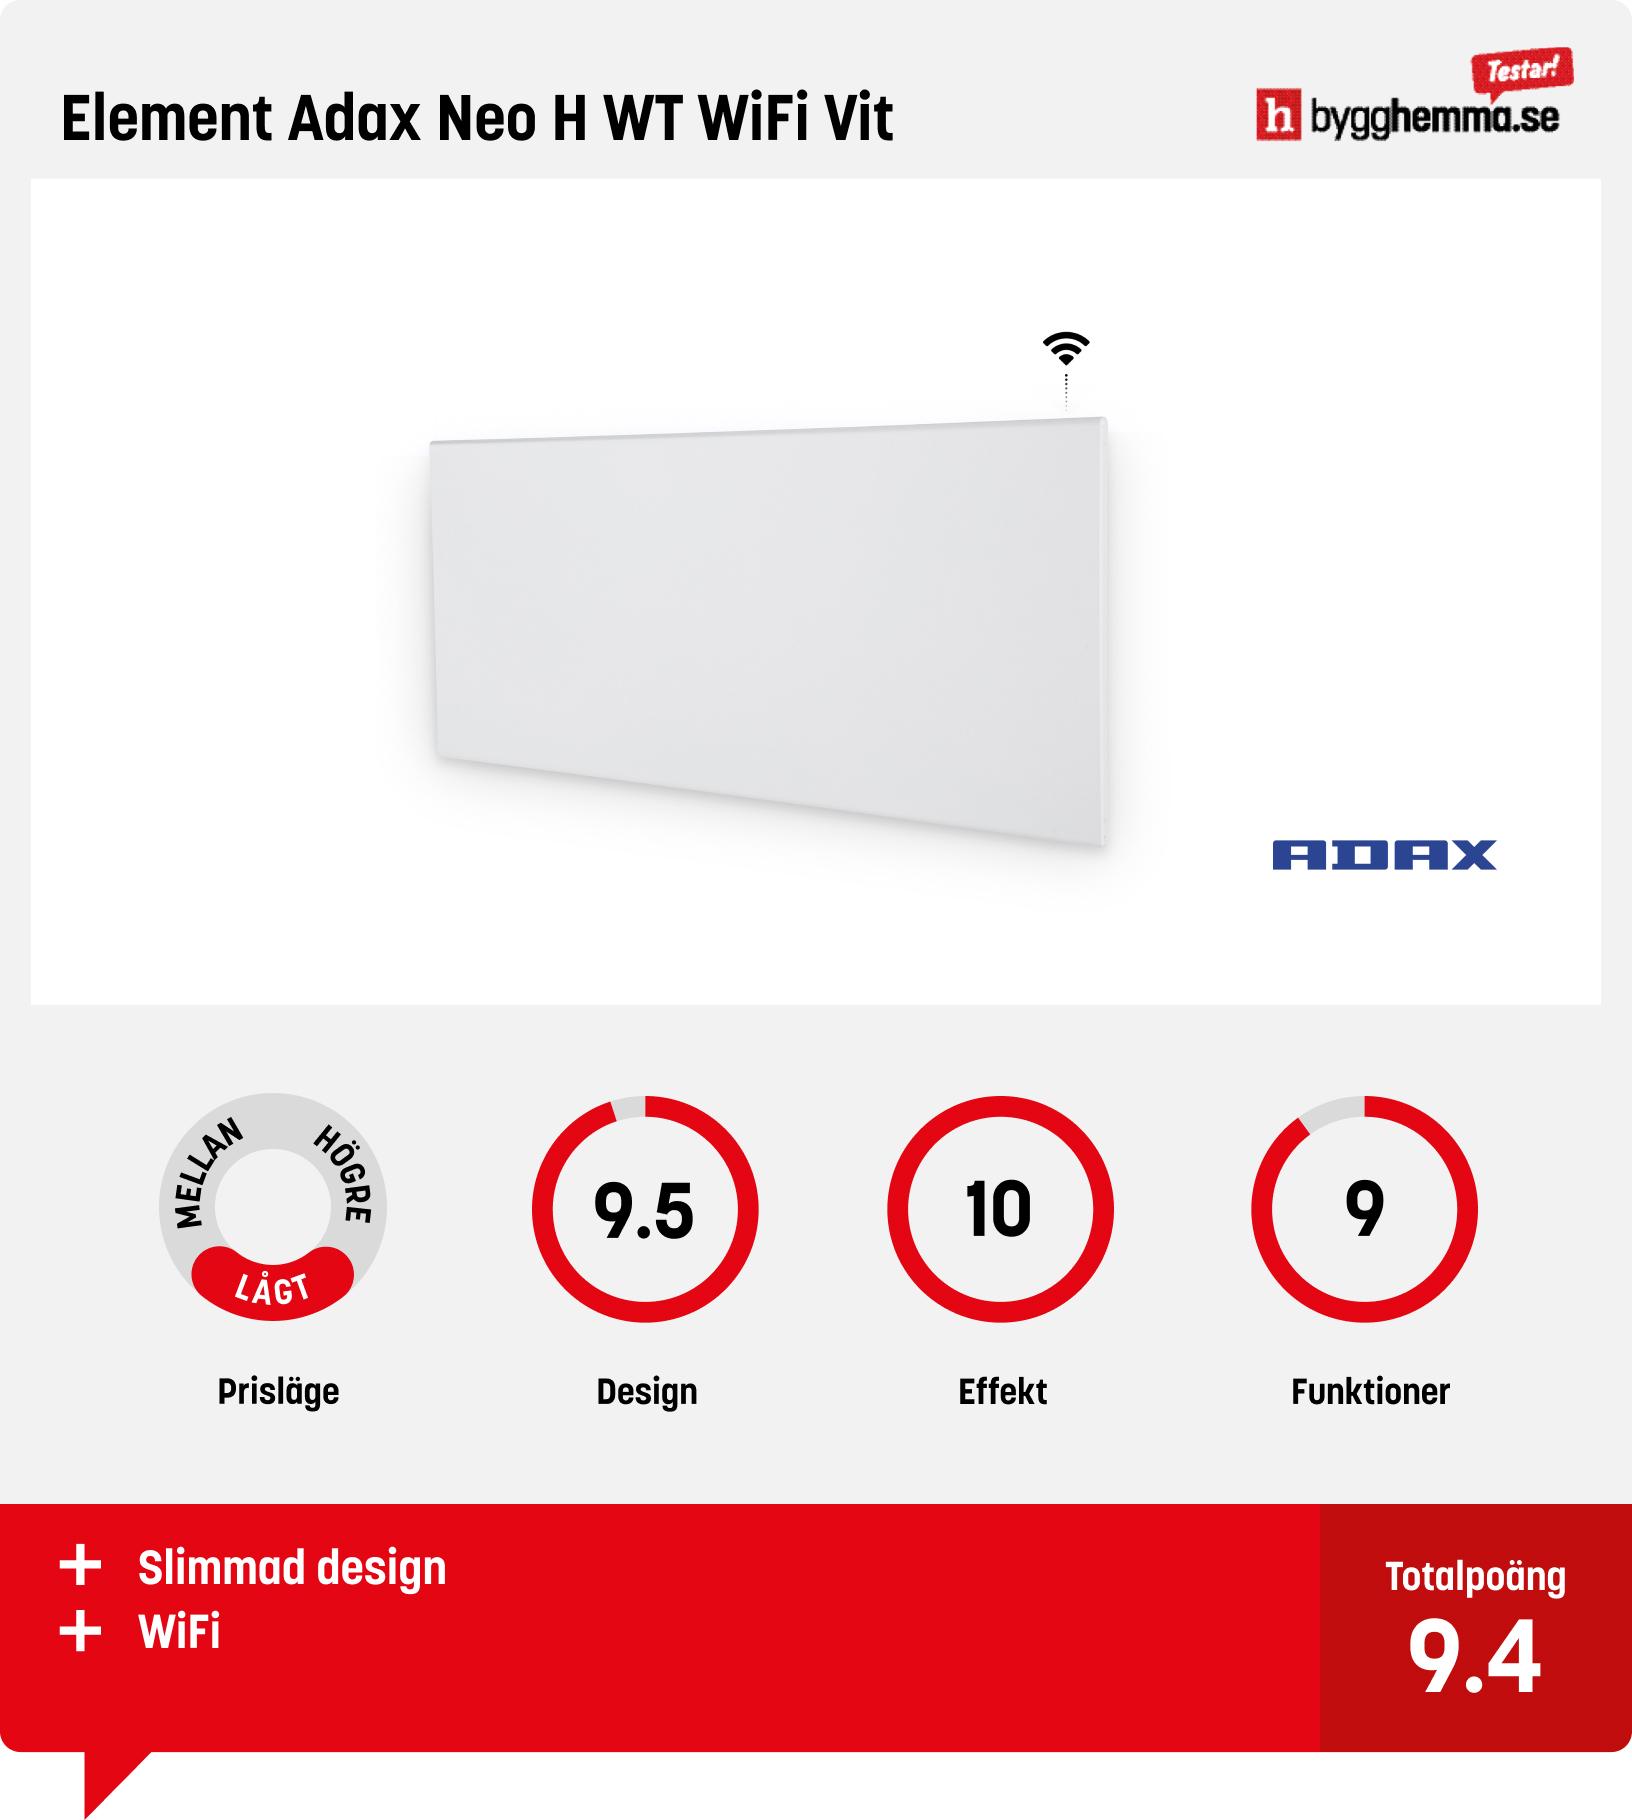 Element bäst i test - Element Adax Neo H WT WiFi